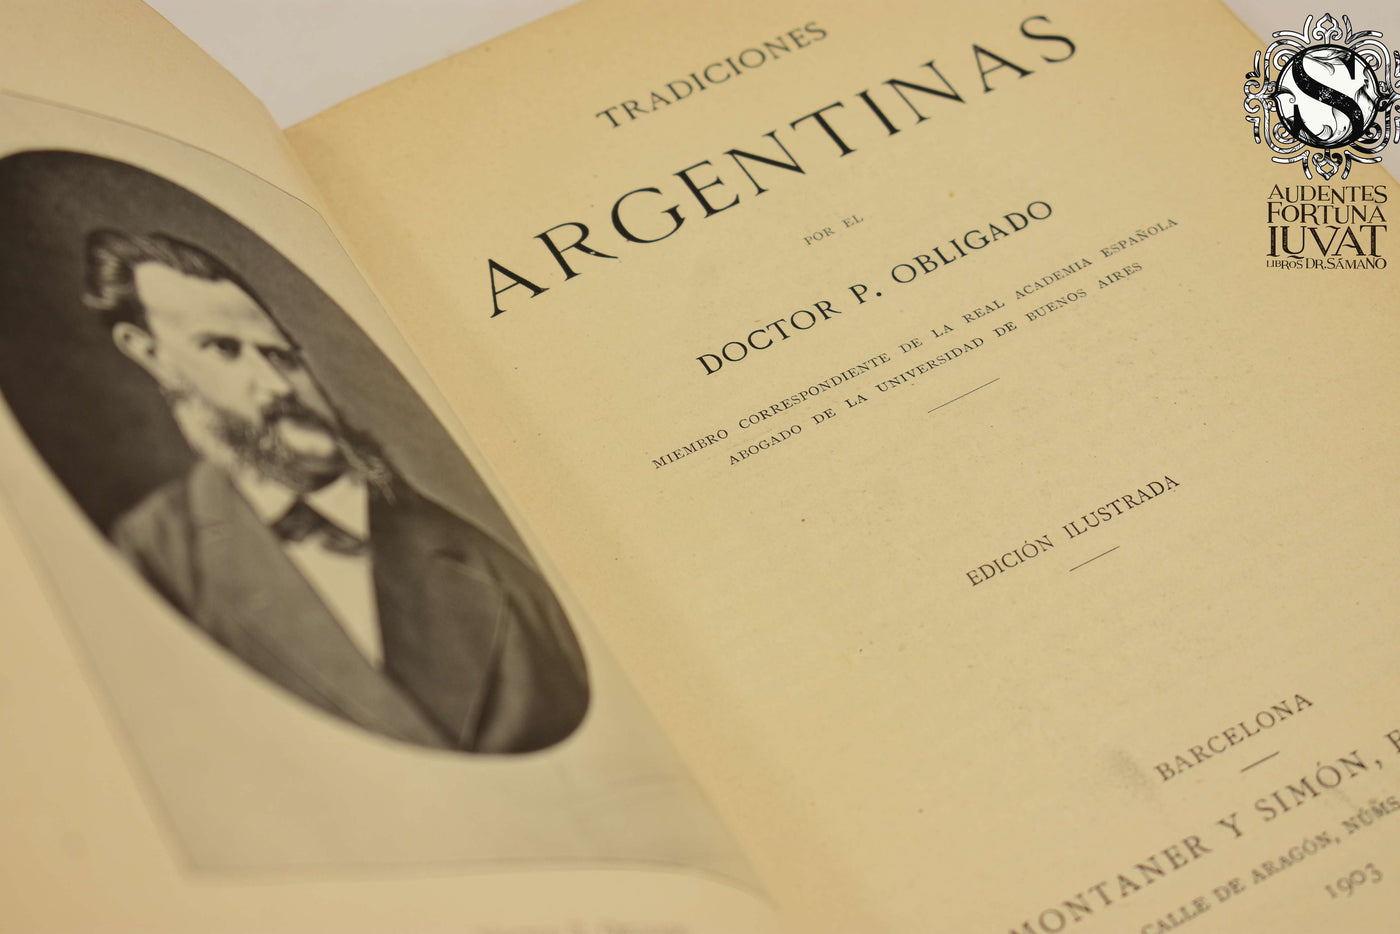 TRADICIONES ARGENTINAS -  Doctor P. Obligado